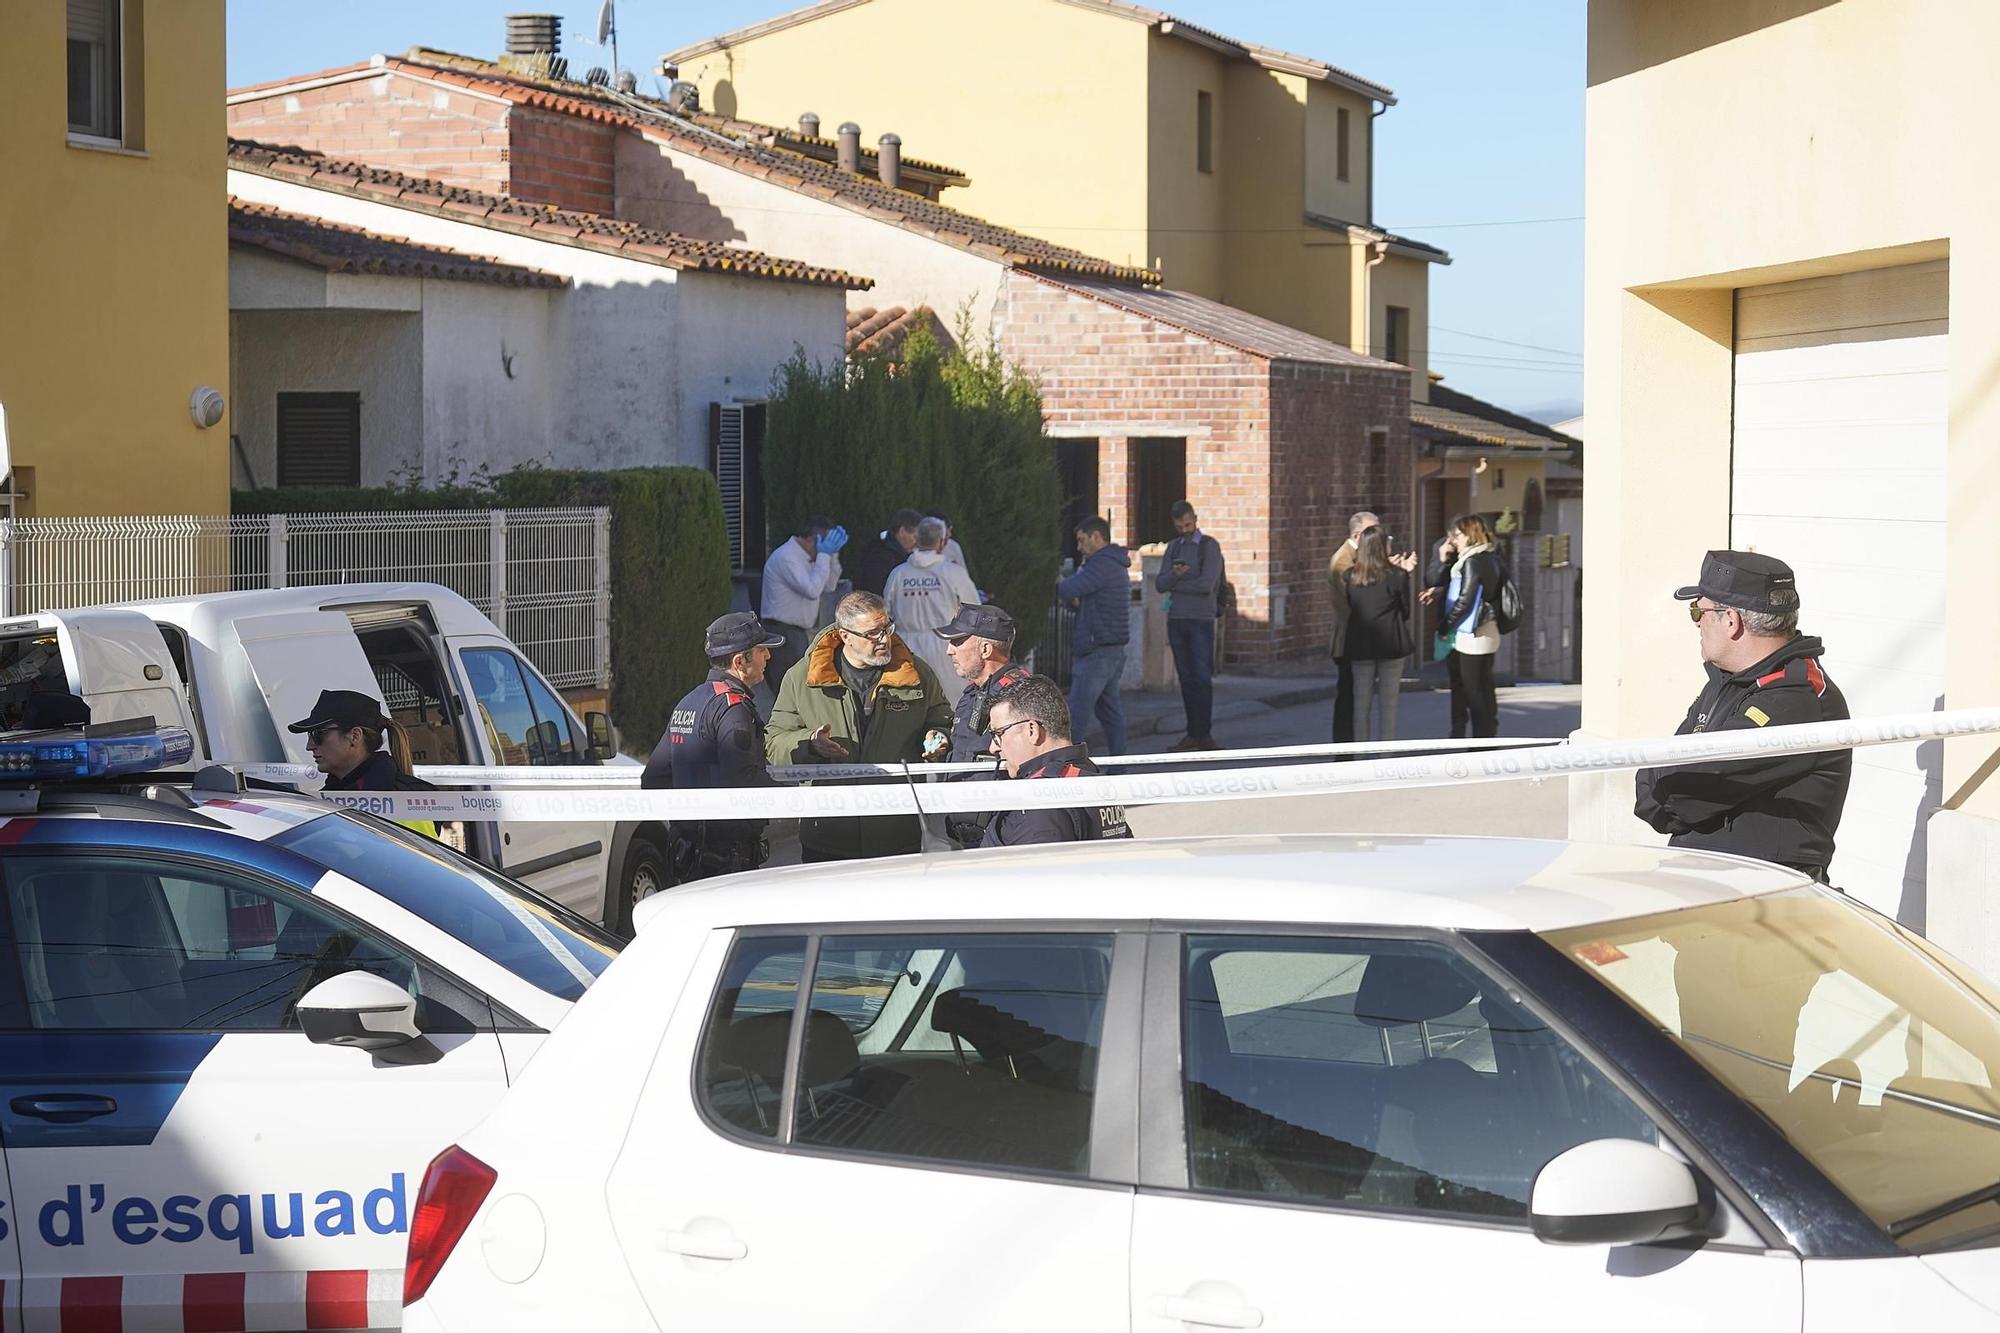 Troben un nen assassinat i la mare apunyalada en un pis de Bellcaire